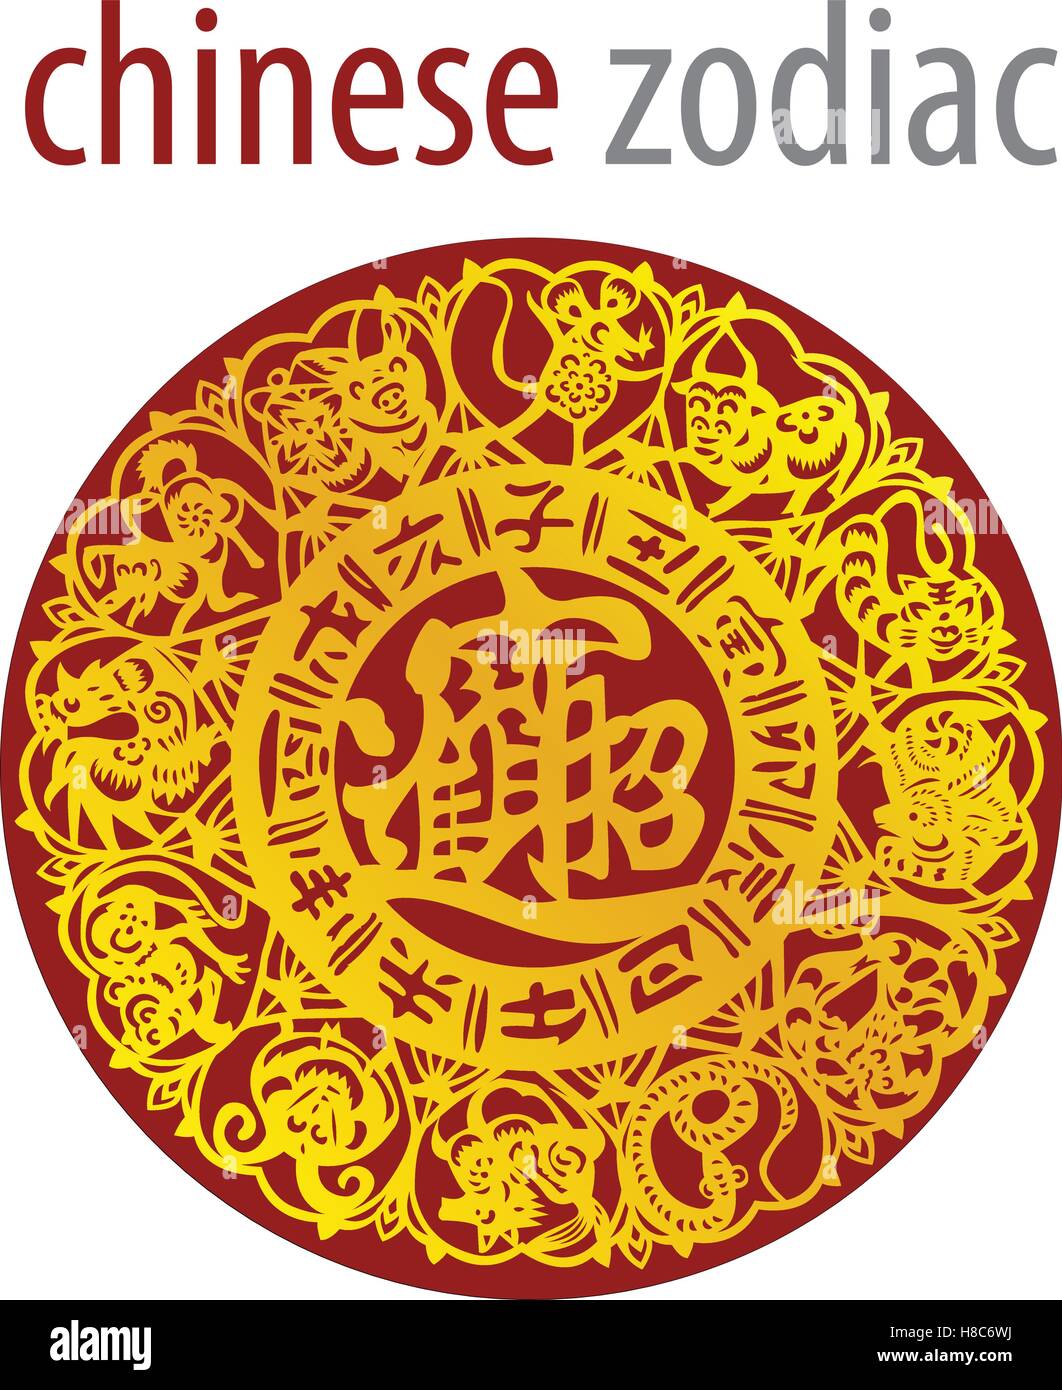 Roue du zodiaque chinois avec des signes et symboles des 5 éléments Illustration de Vecteur